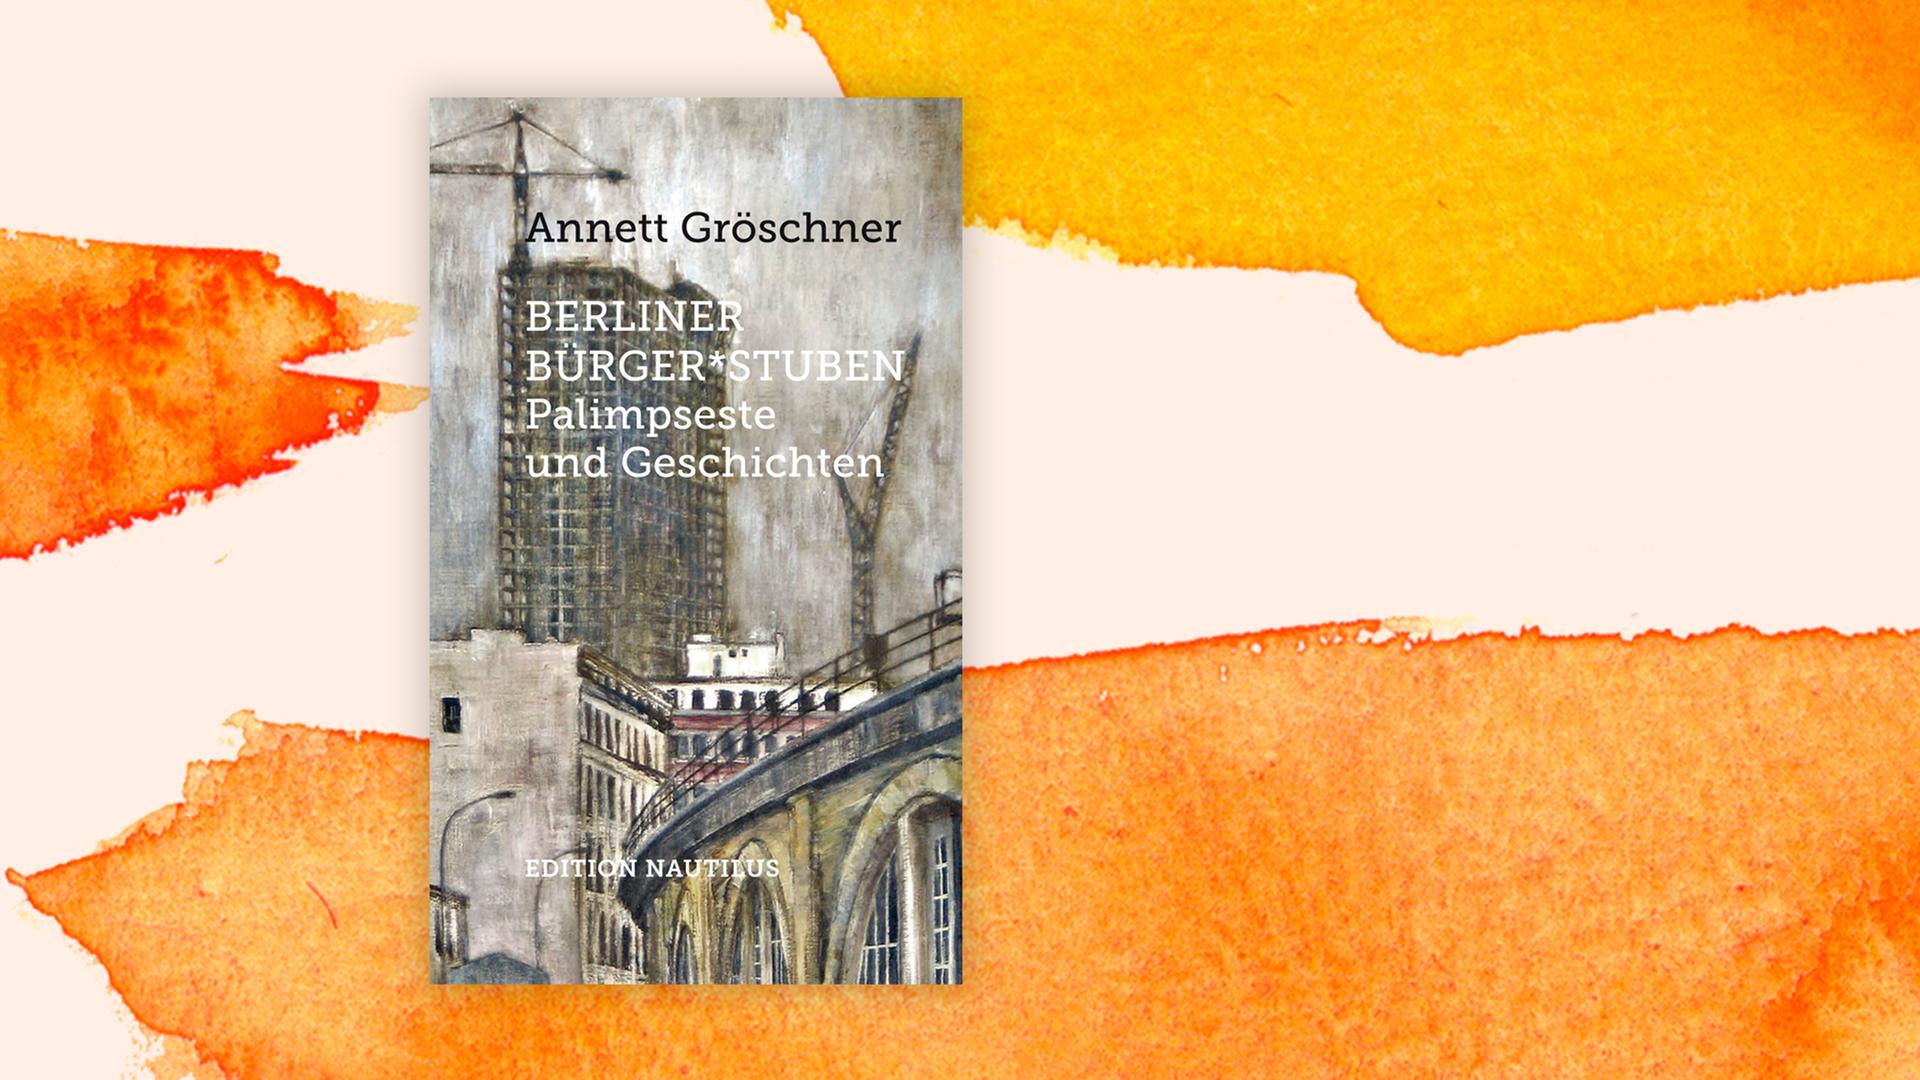 Annett Gröschner: Berliner Bürger*stuben. Palimpseste und Geschichten